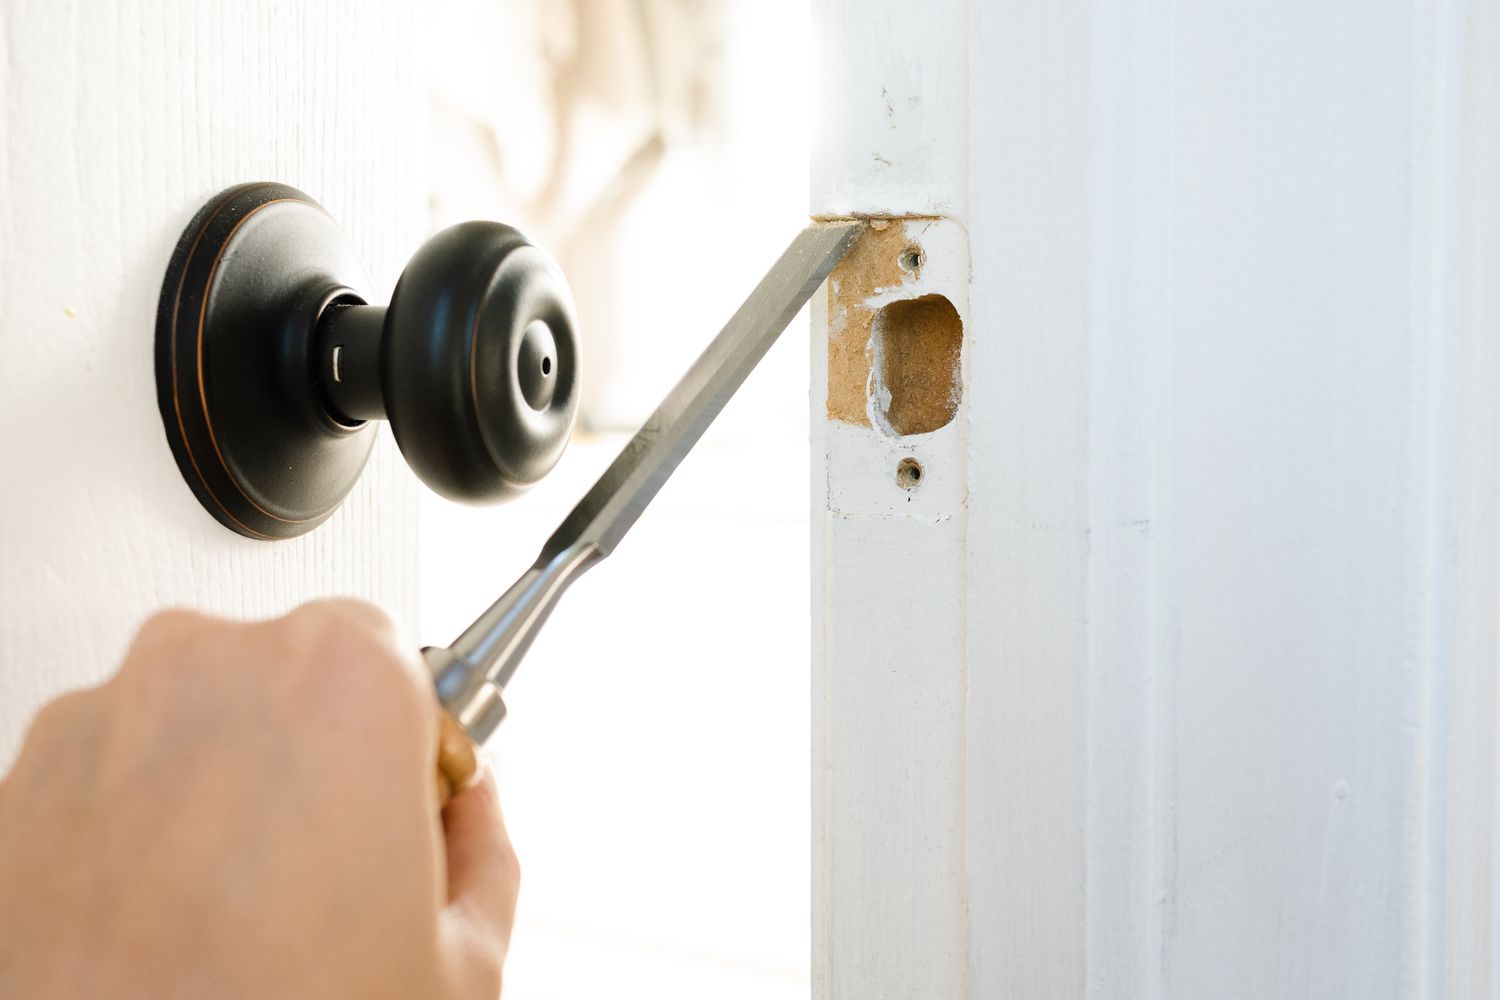 How To Chisel Door For Lock